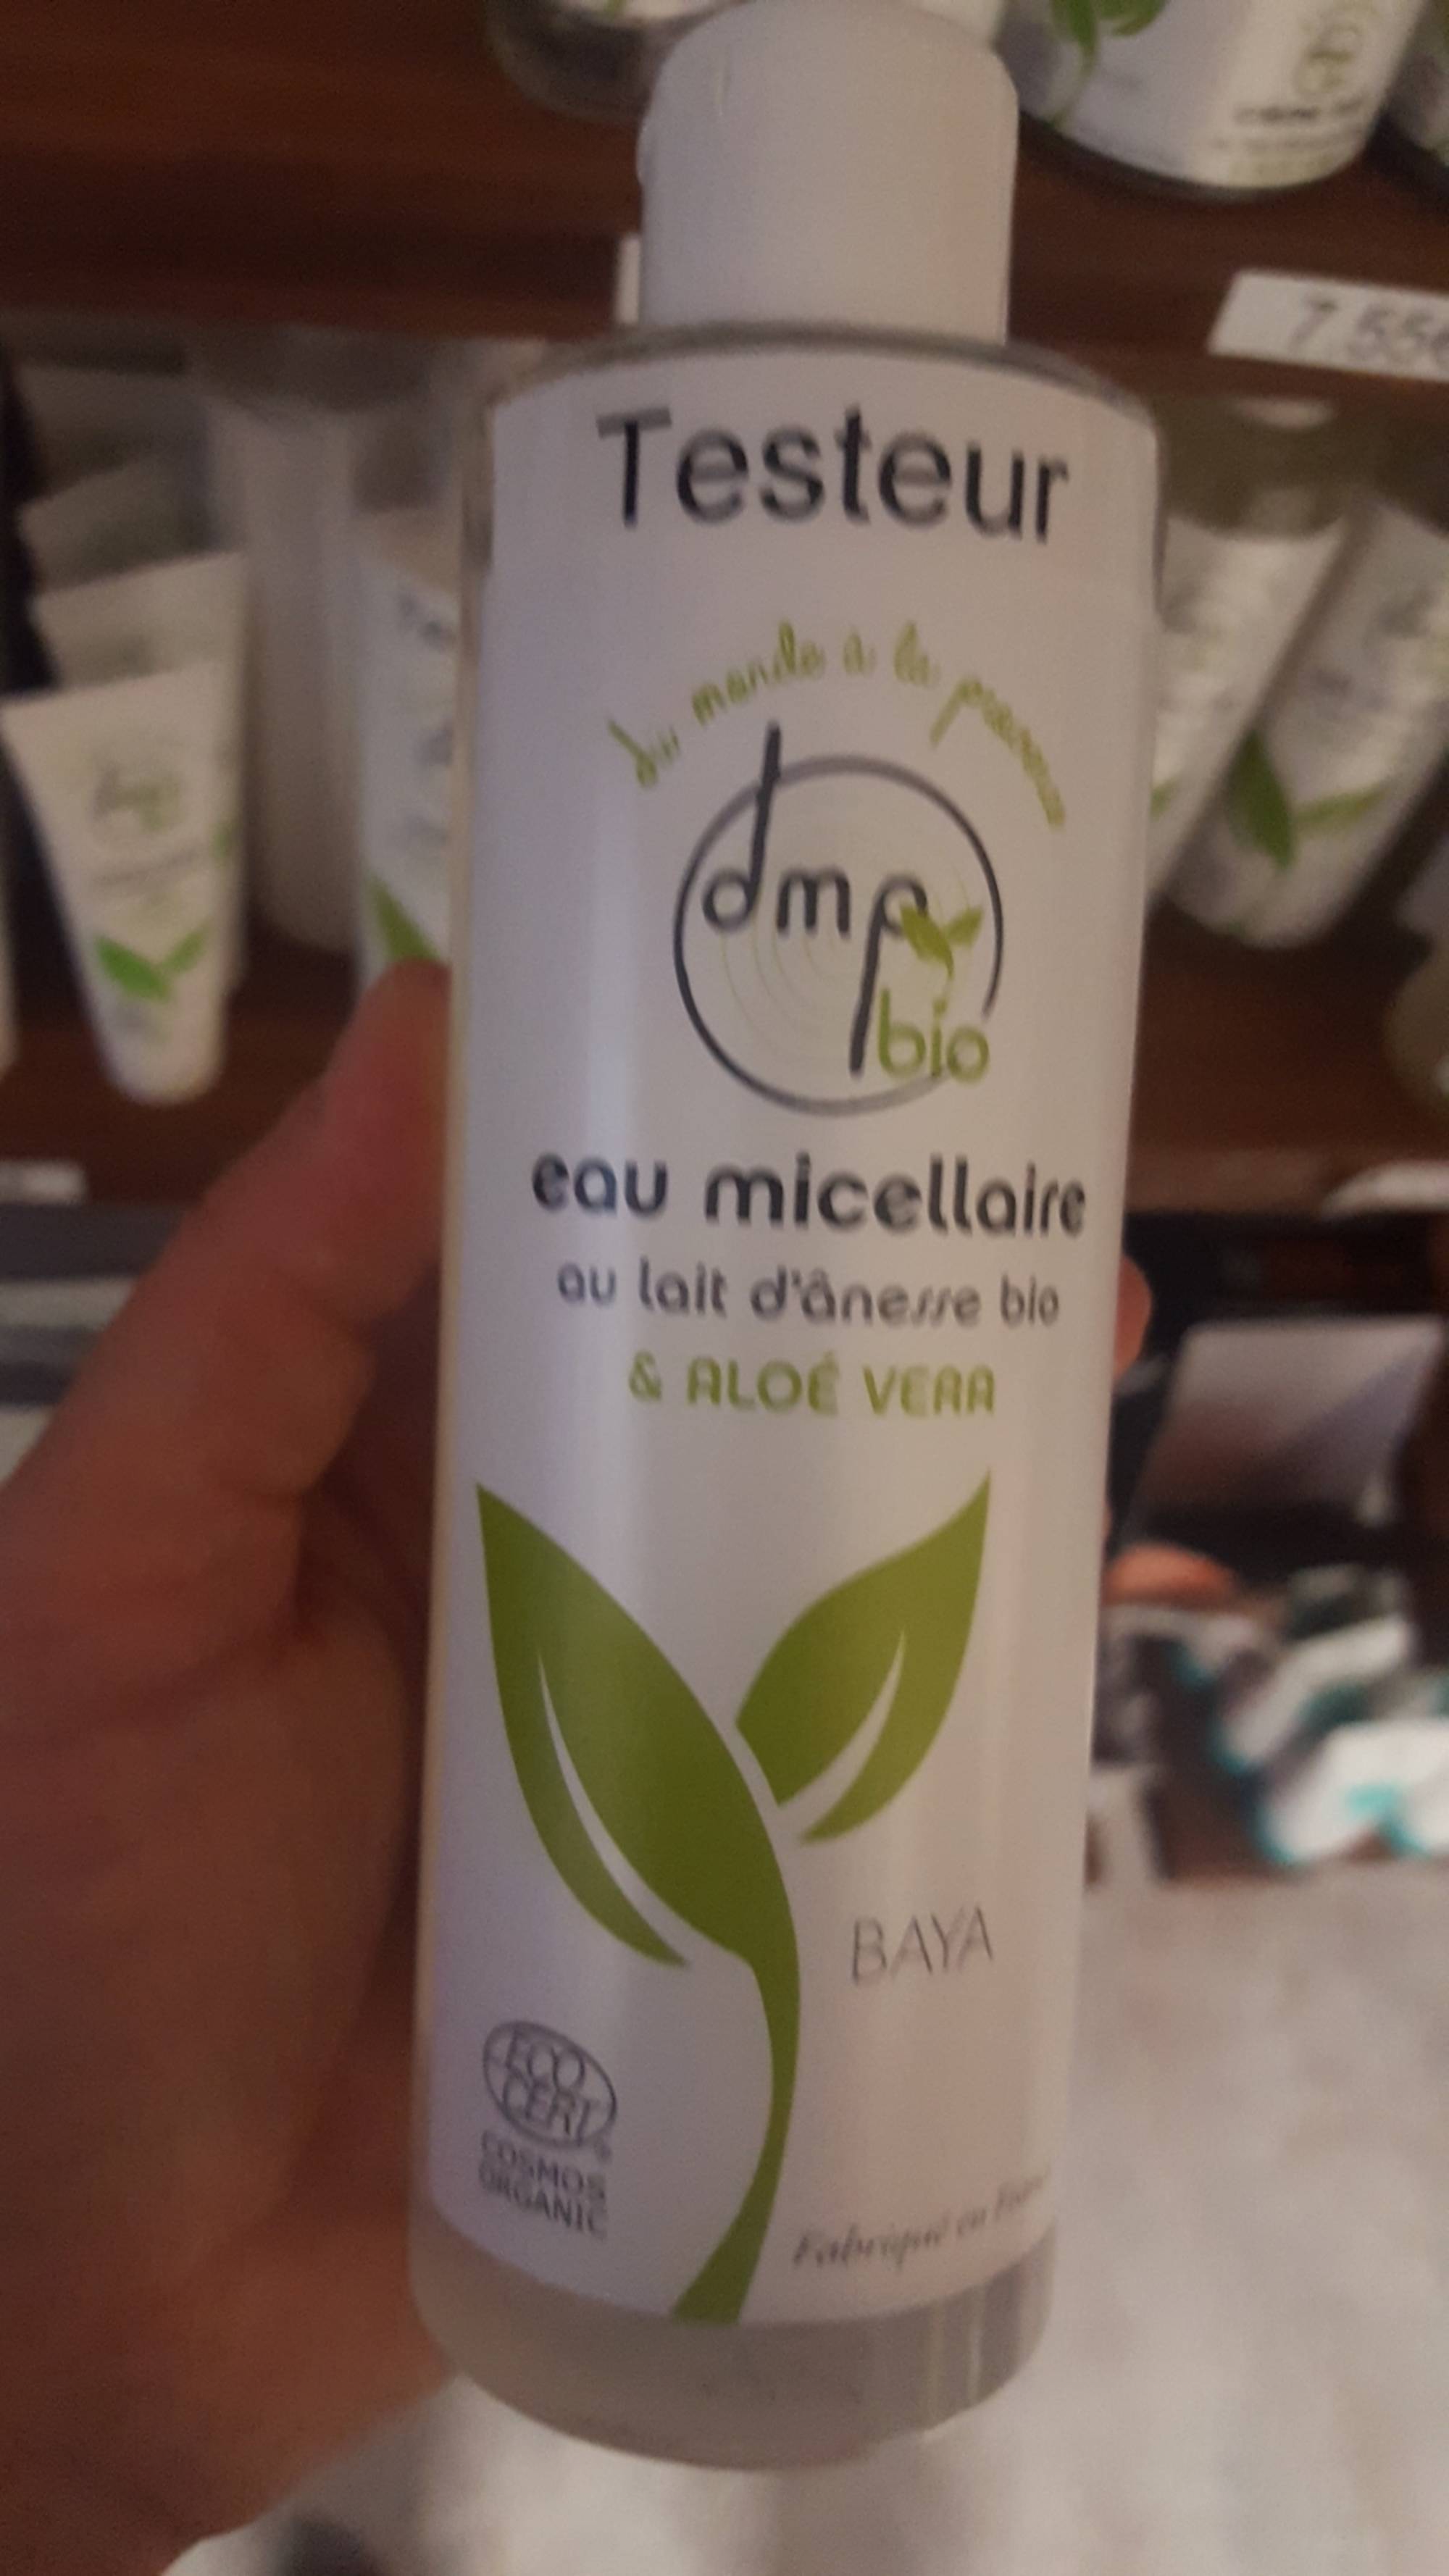 DMP - Eau micellaire au lait d'ânesse bio et aloe vera